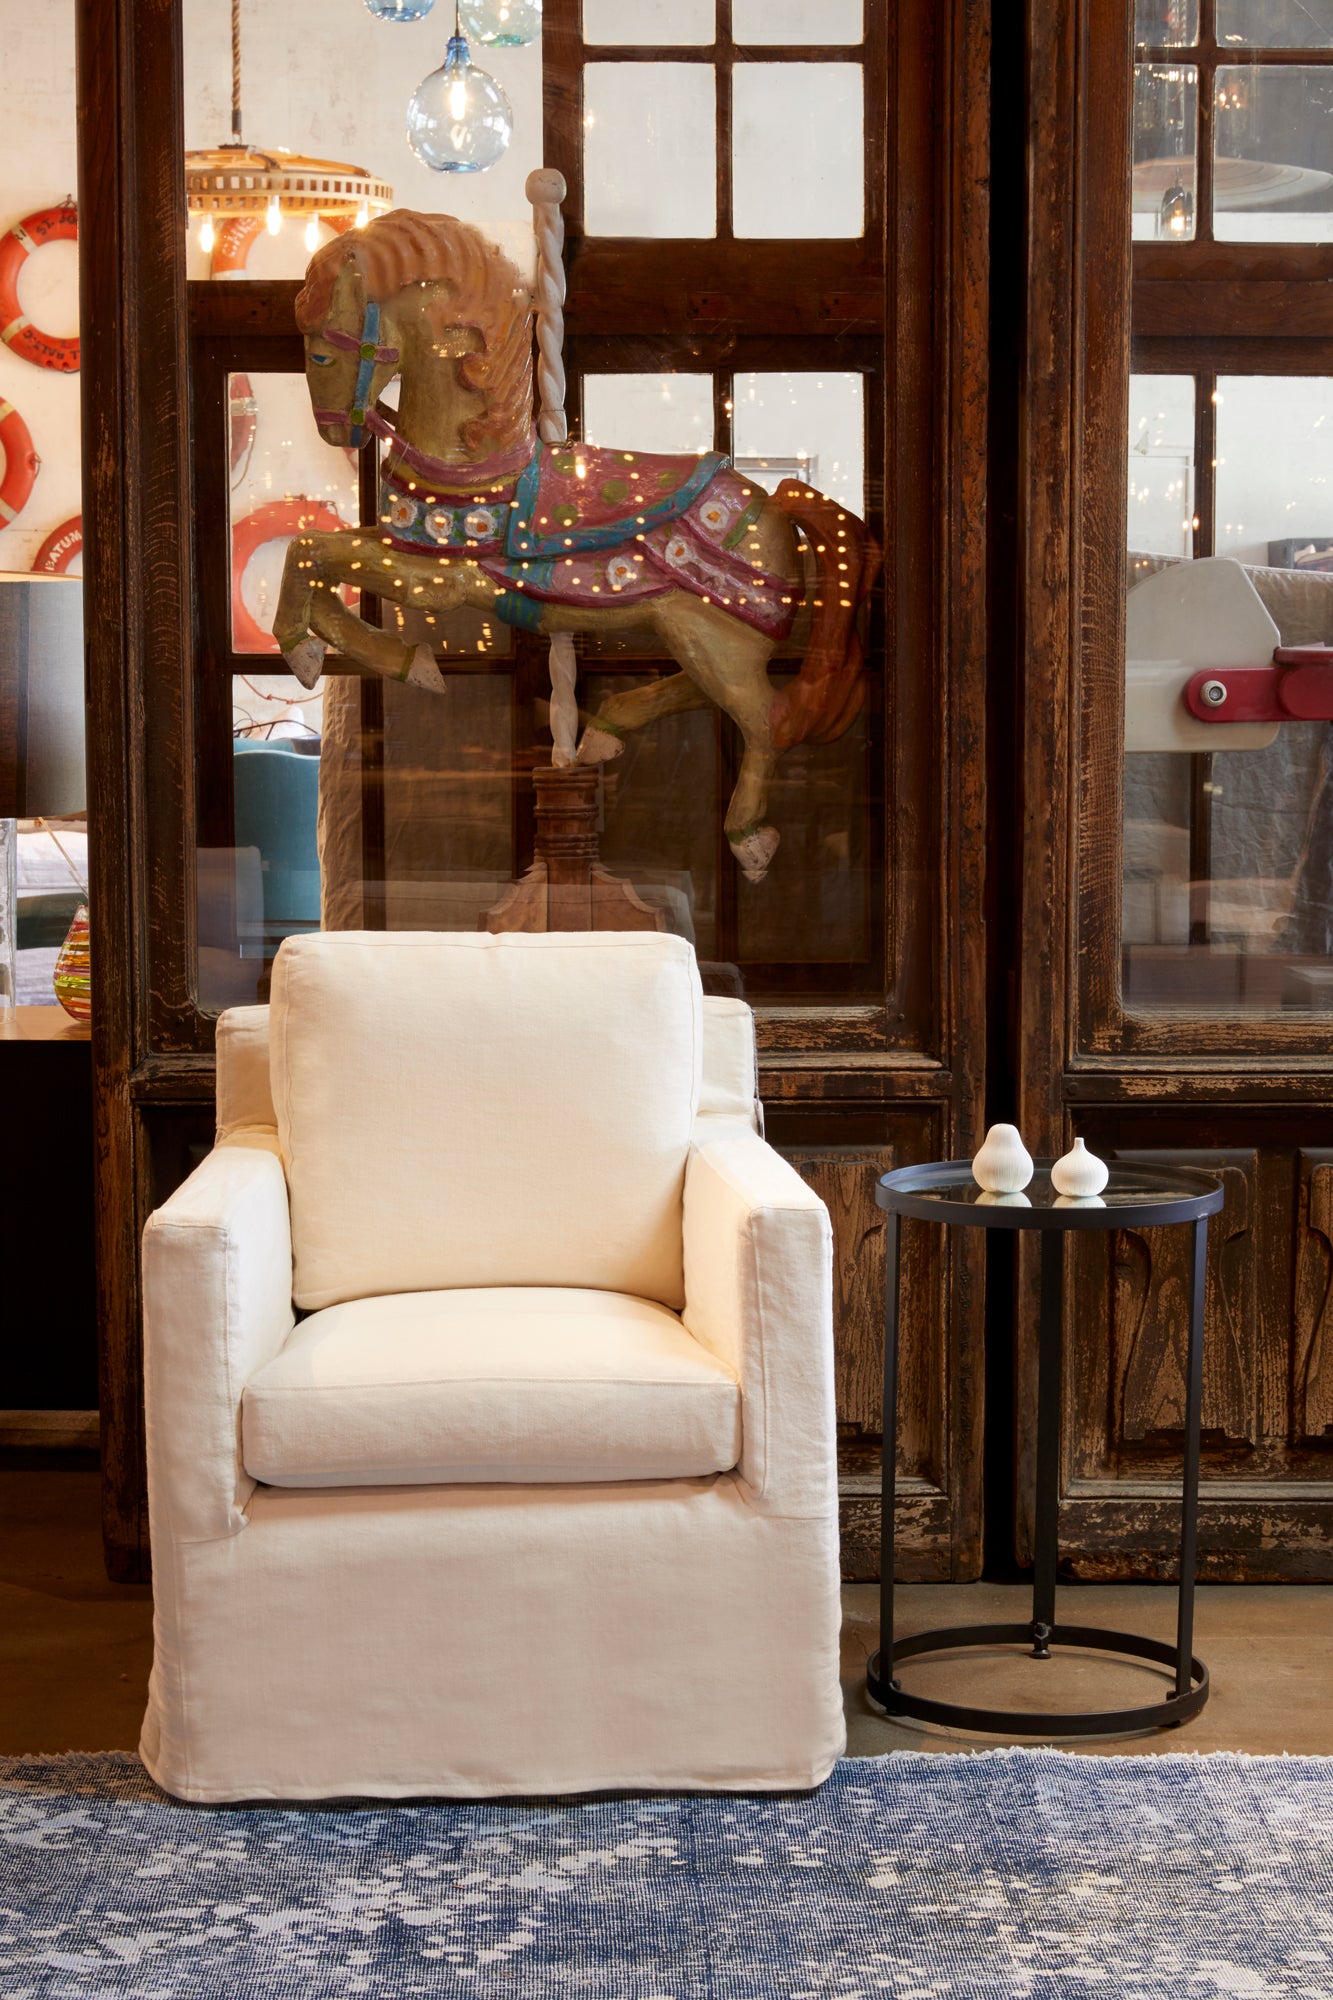  在Mariet Ivory的路易迷你椅子旁边的金属边桌. 背景是一个棕色的柜子，里面有一匹旋转木马作为装饰. 